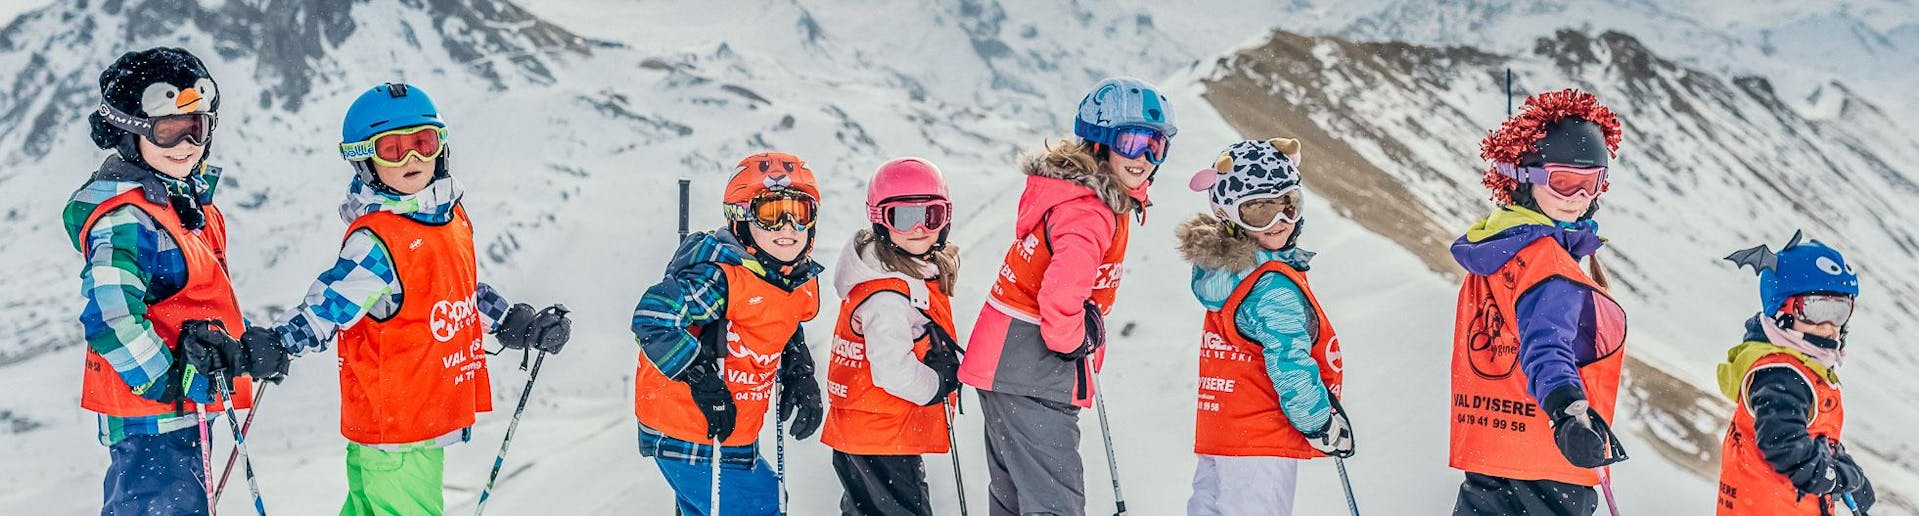 Cours de ski pour Enfants (3-12 ans).